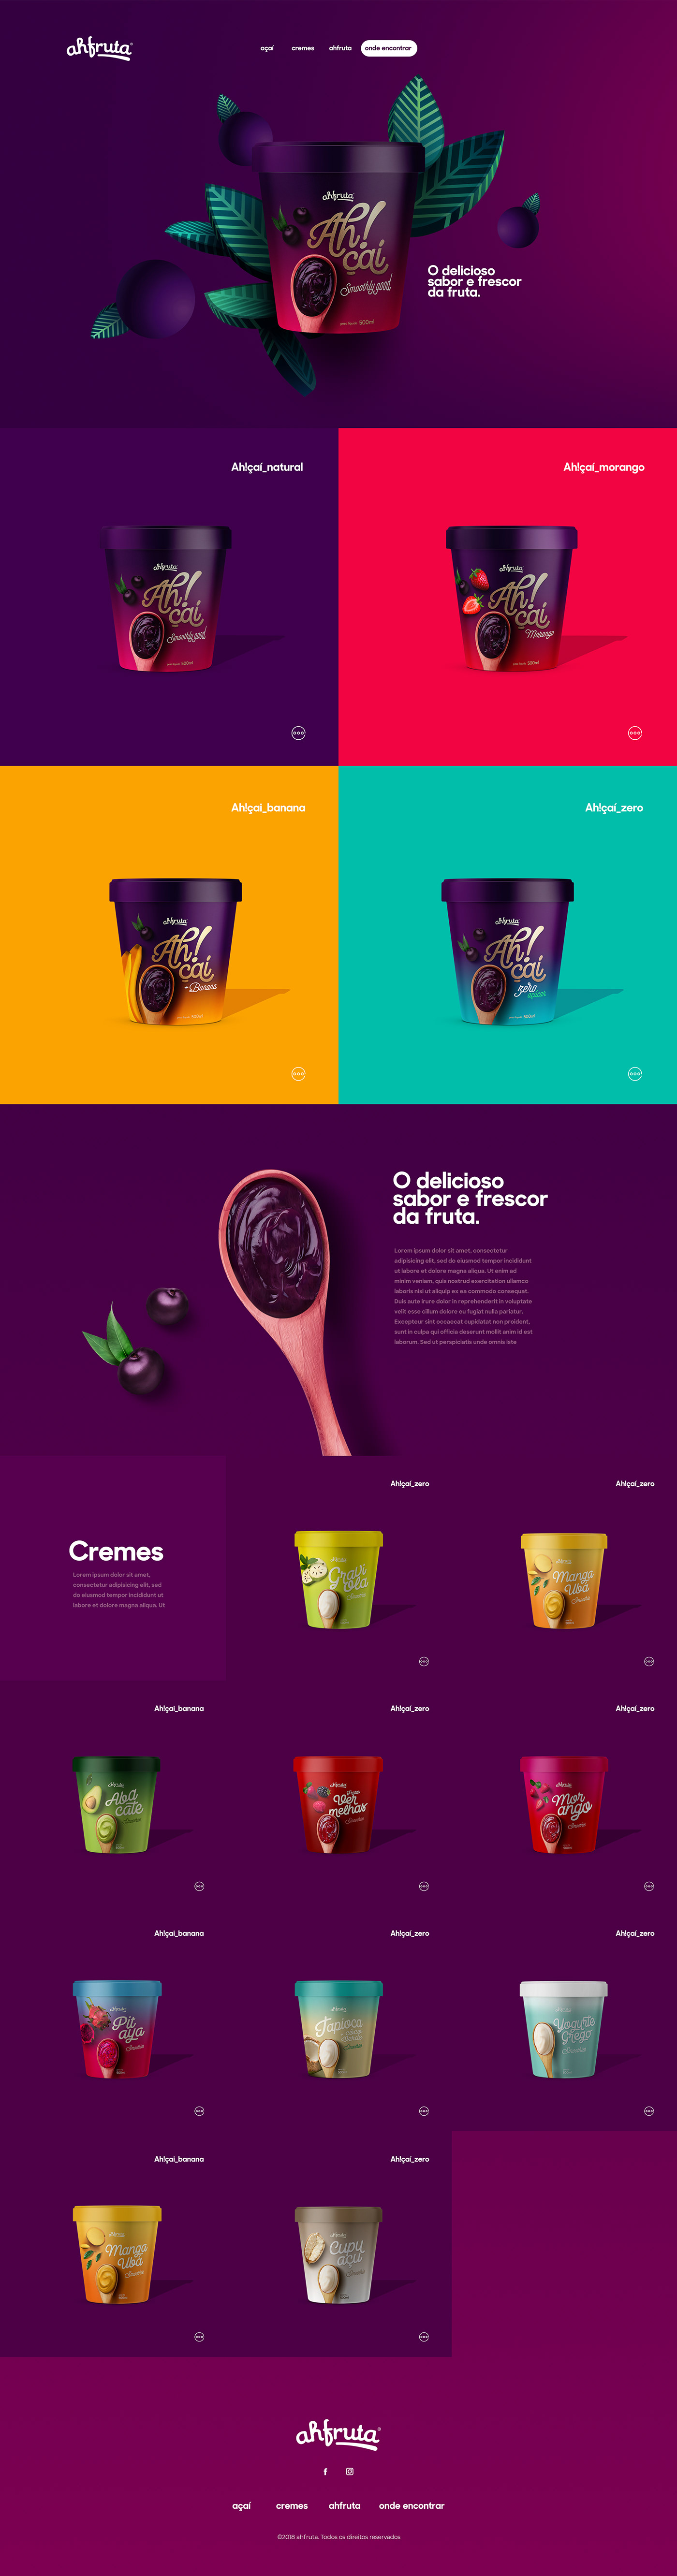 acai brand branding  design Fruit package Packaging